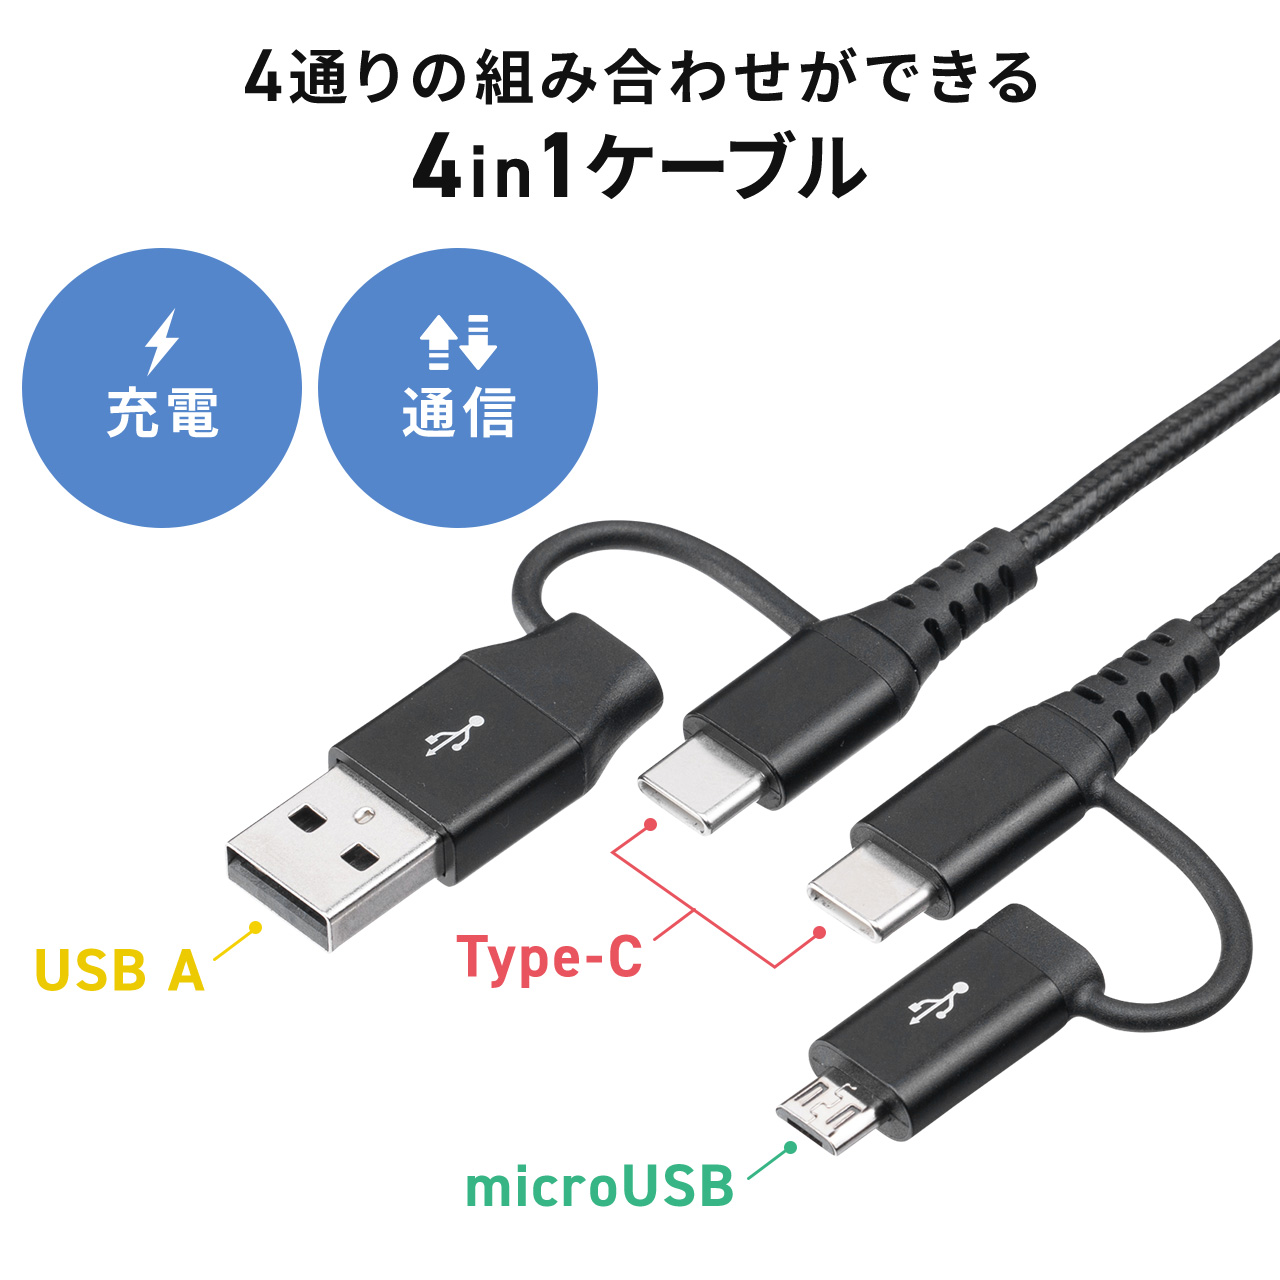 春夏新作 4in1 USB2.0ケーブル PD60W対応 Type-C Type-A 1m microUSB ブラック スマホ 高耐久  ポリエチレンメッシュケーブル データ転送 充電 タブレット USBケーブル